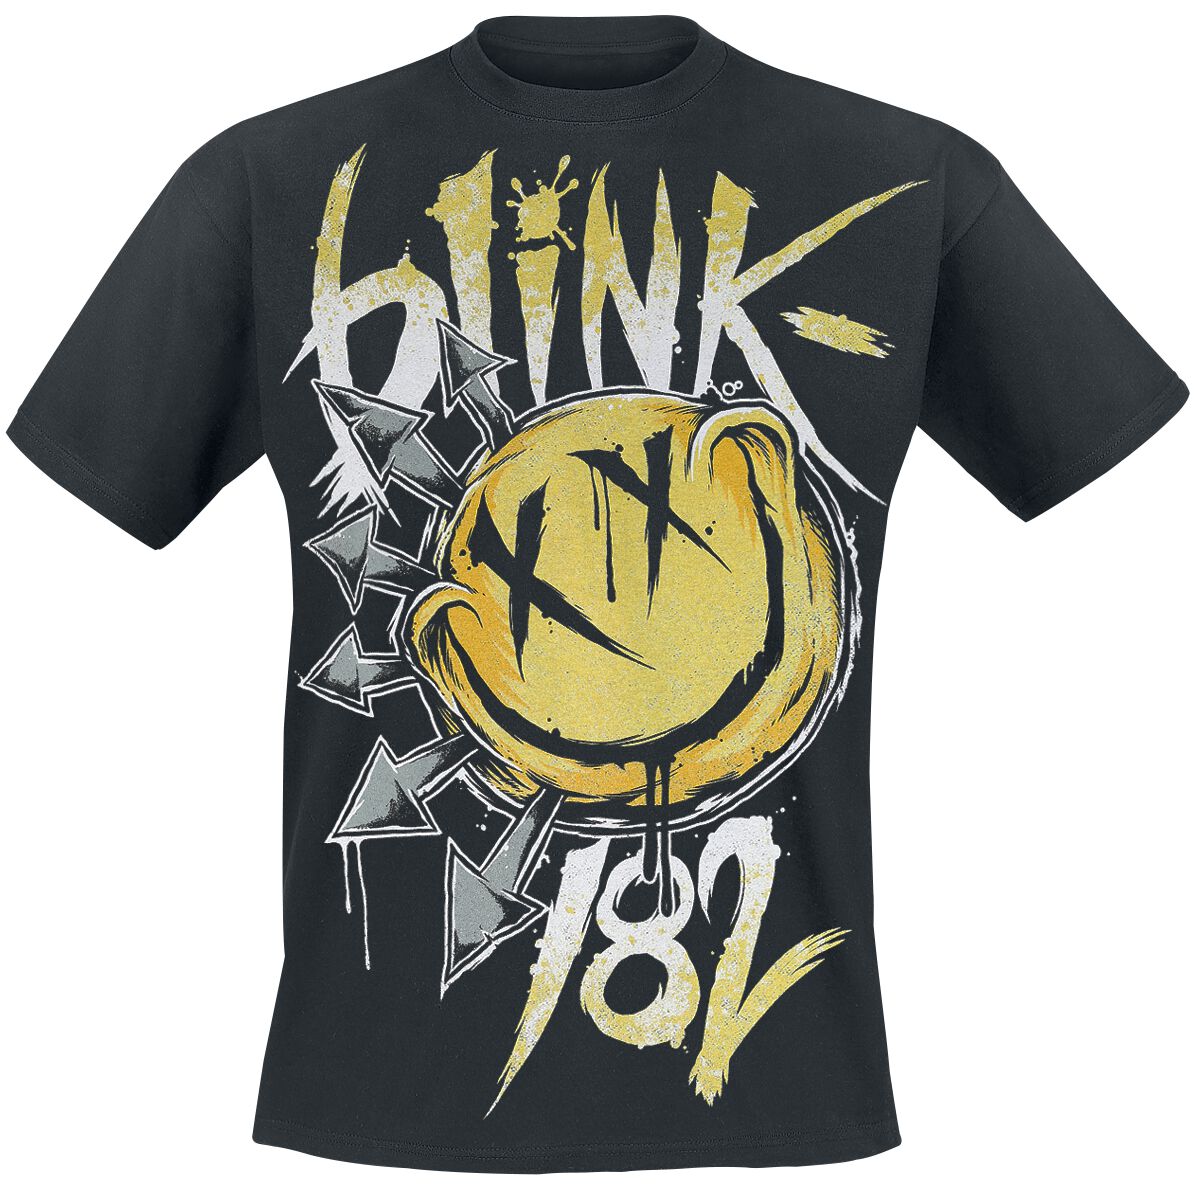 Blink-182 T-Shirt - Big Smile - S bis XXL - für Männer - Größe S - schwarz  - Lizenziertes Merchandise!